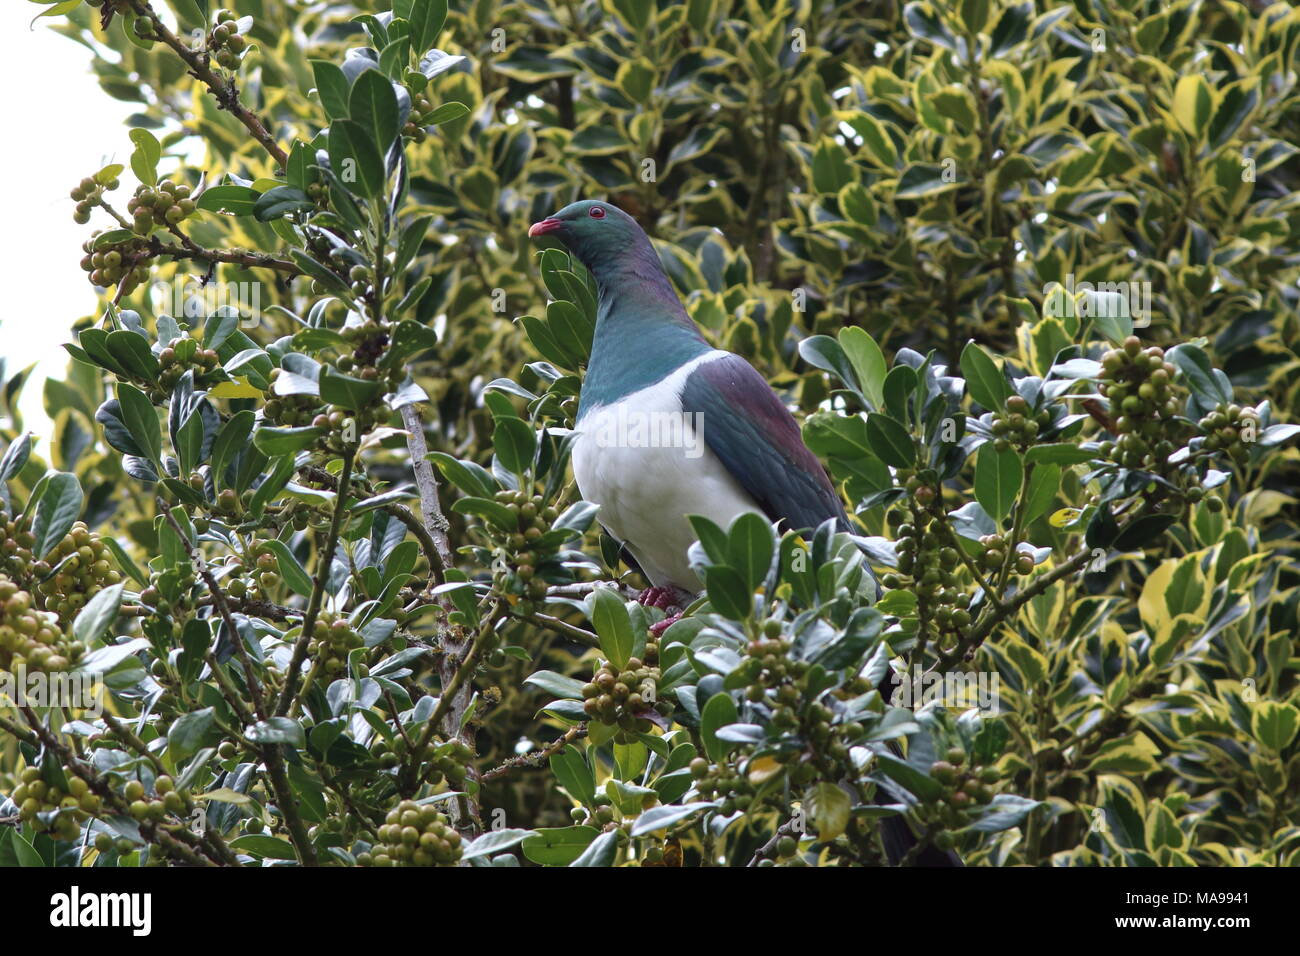 Hemiphaga novaeseelandiae, NZ Colombaccio un frutto arboree pigeon, nativo degli uccelli endemici conosciuto dalla gente del luogo come un kokopa, qui in una struttura ad albero con frutti di bosco Foto Stock